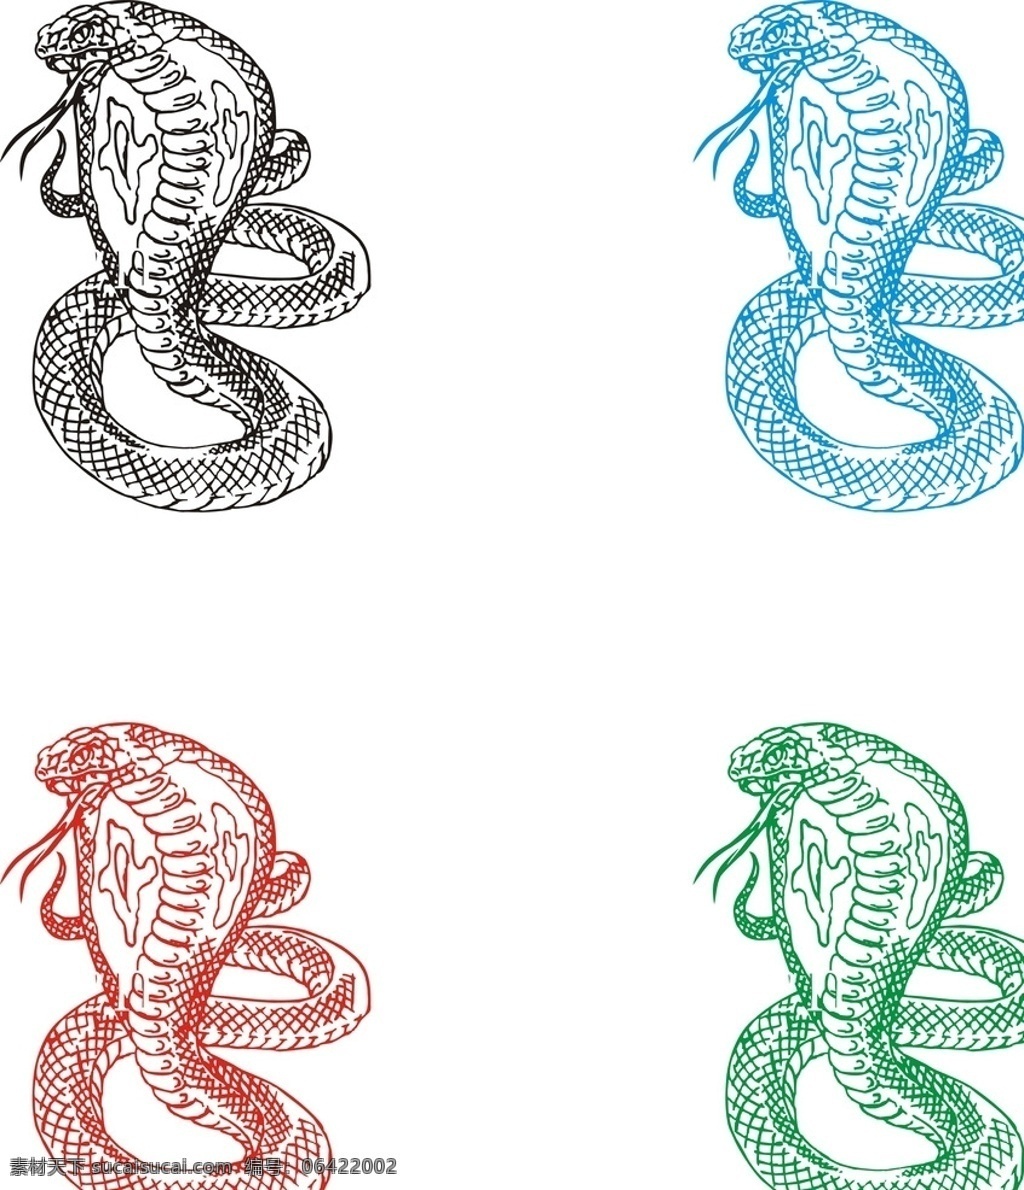 眼镜蛇 蛇 可编辑 多用途 独家 精细 野生动物 生物世界